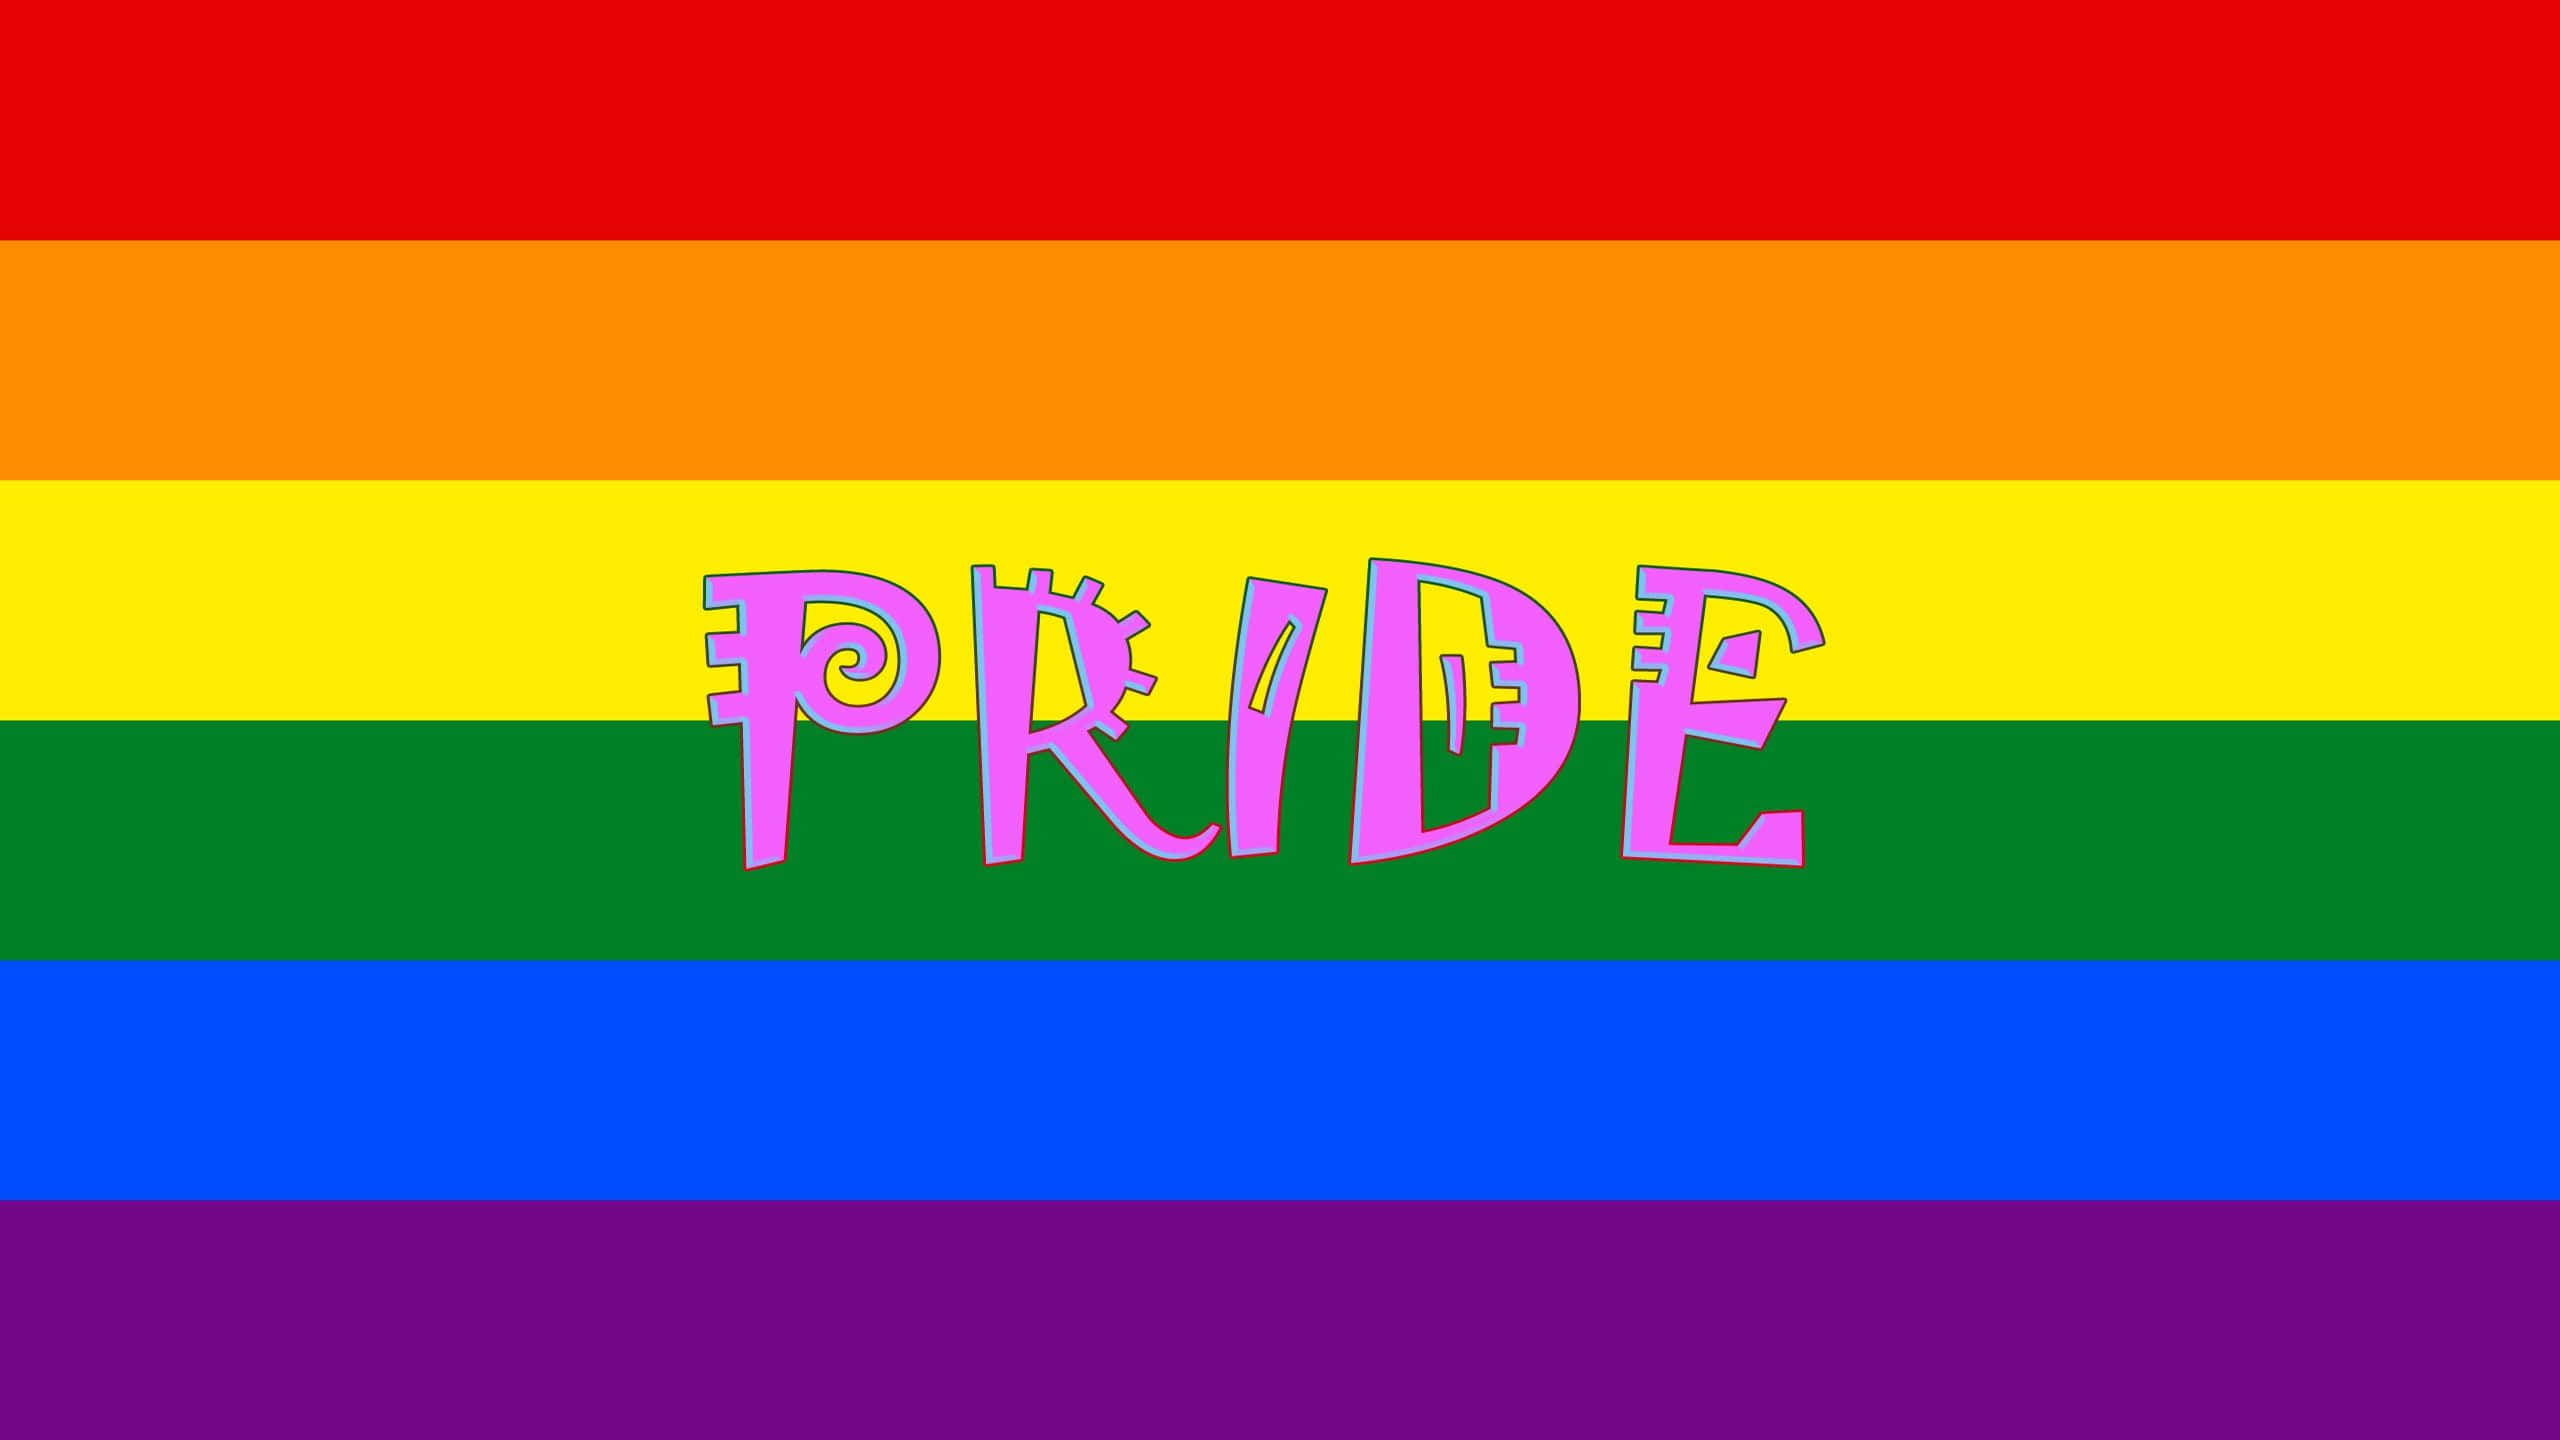 Prideflaggamed Ordet Stolthet